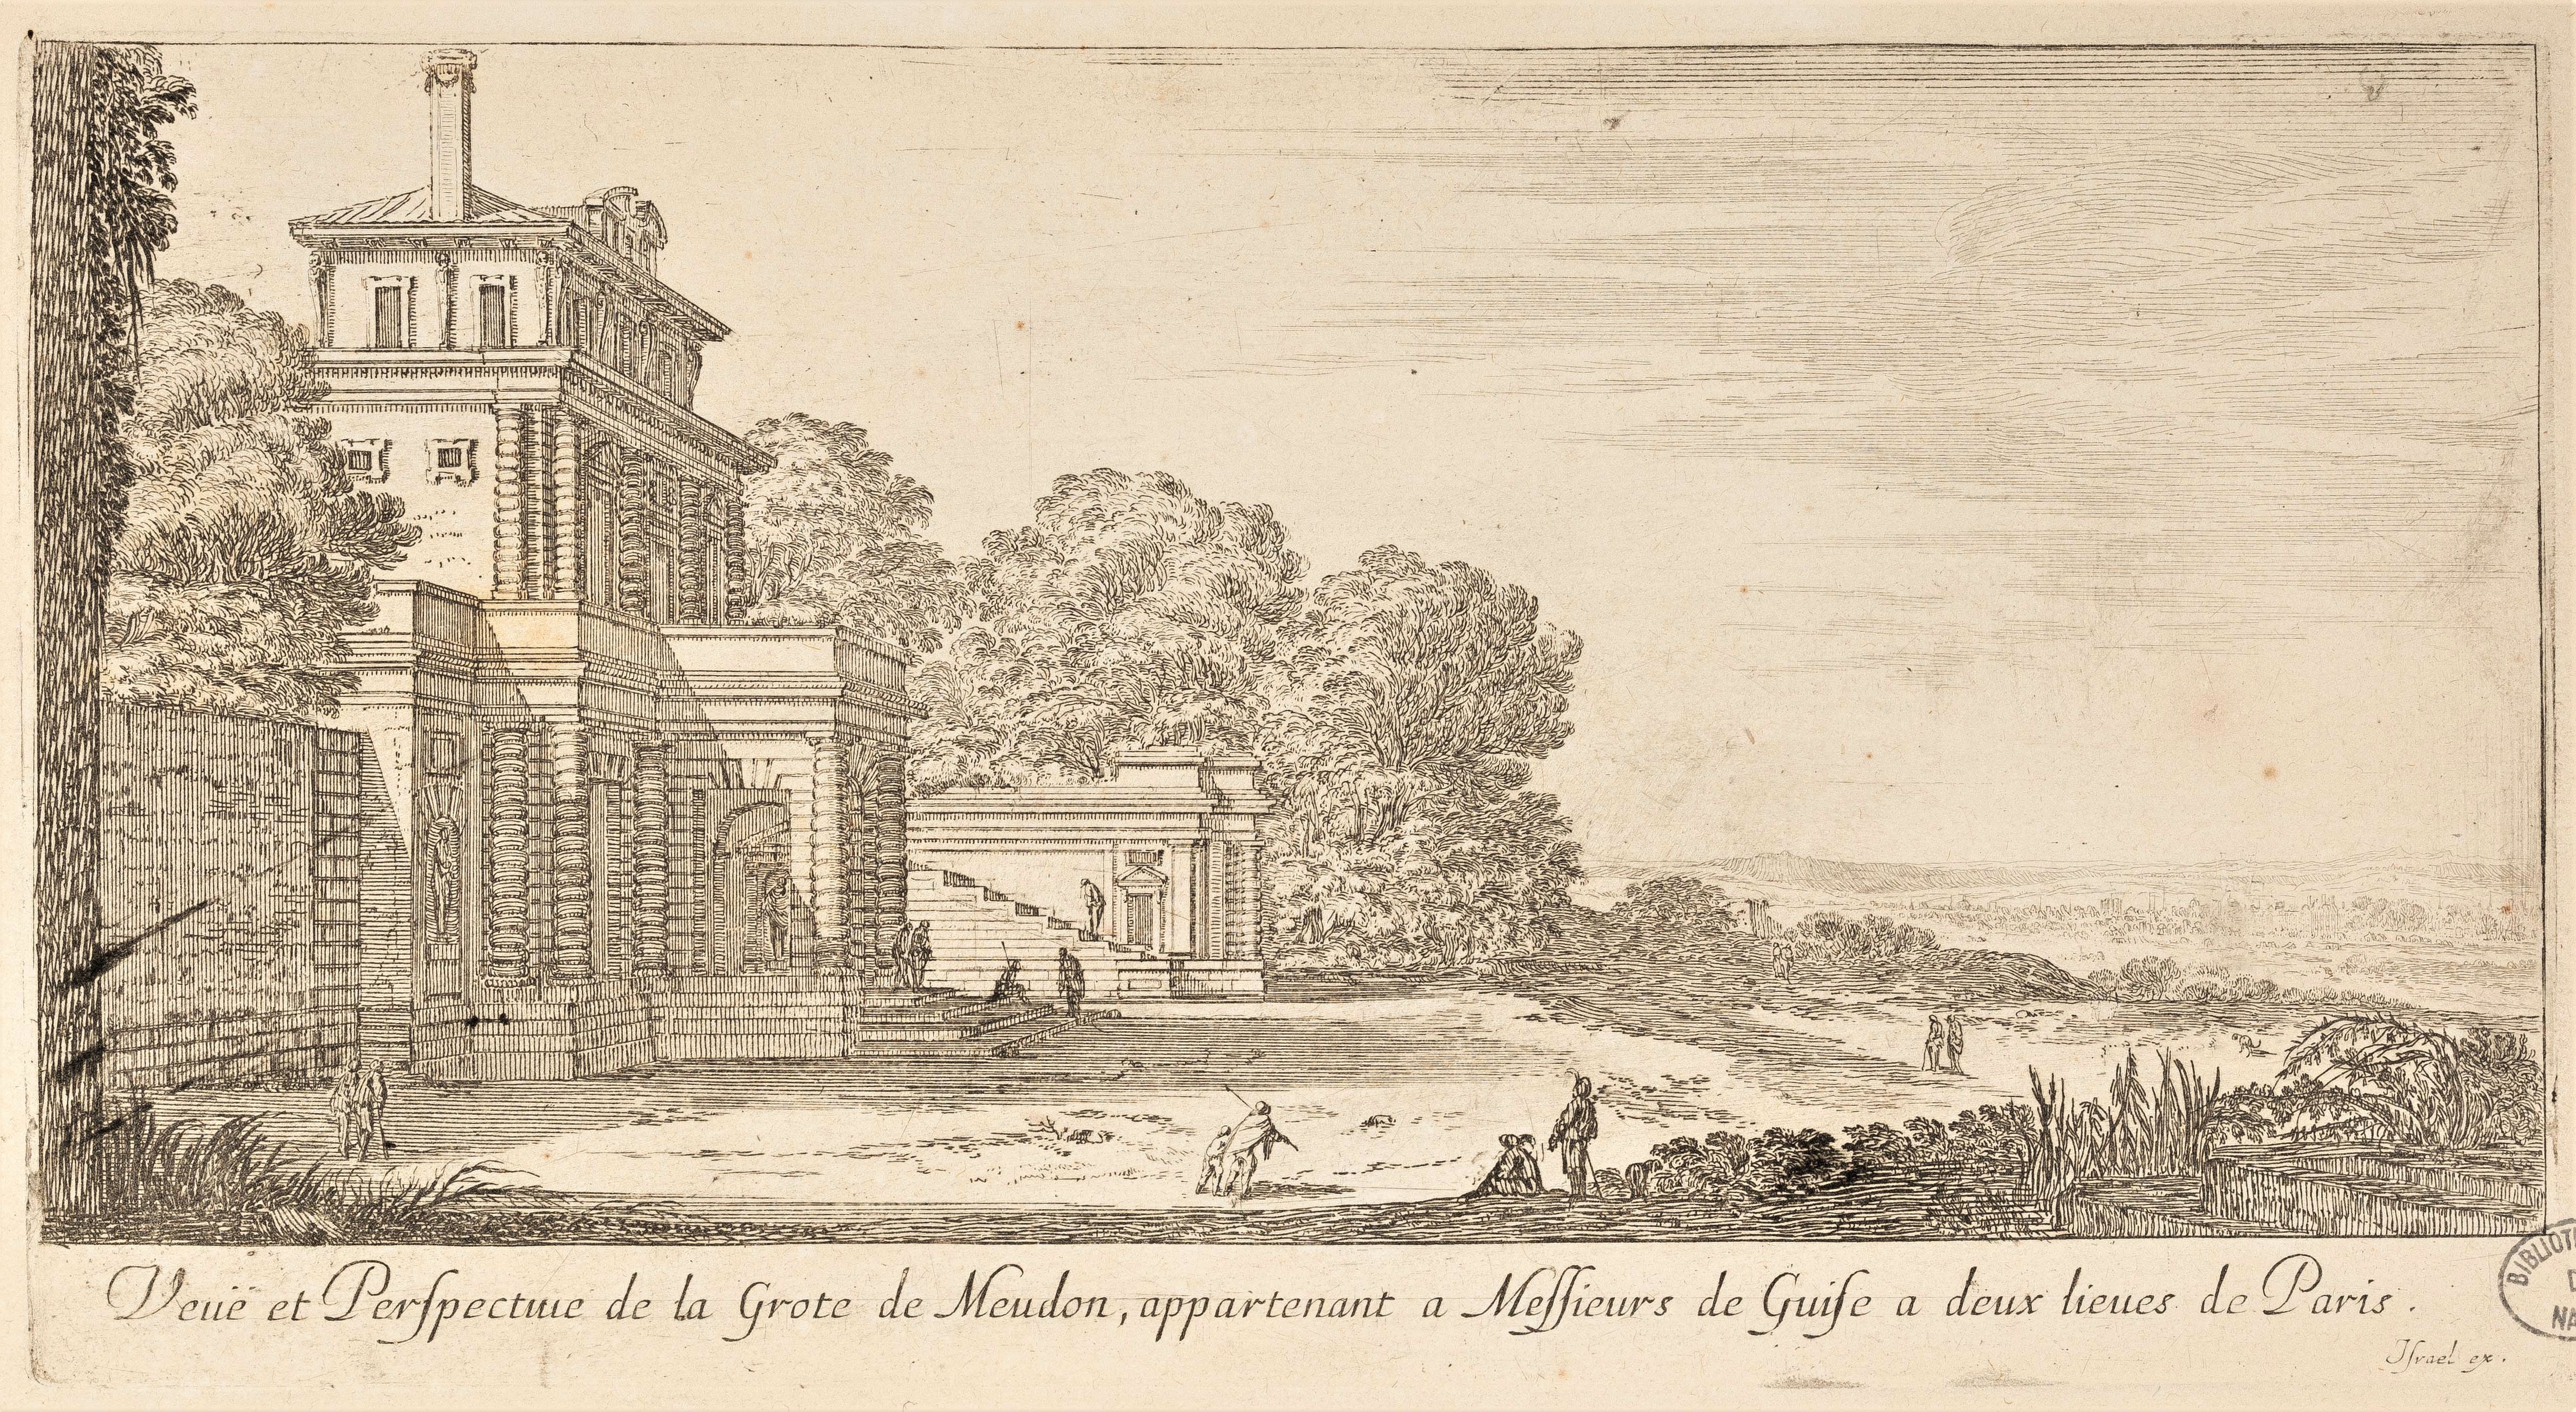 Israël Silvestre : Veuë et Perspectiue de la Grote de Meudon, appartenant a Messieurs de Guise a deux lieues de Paris.